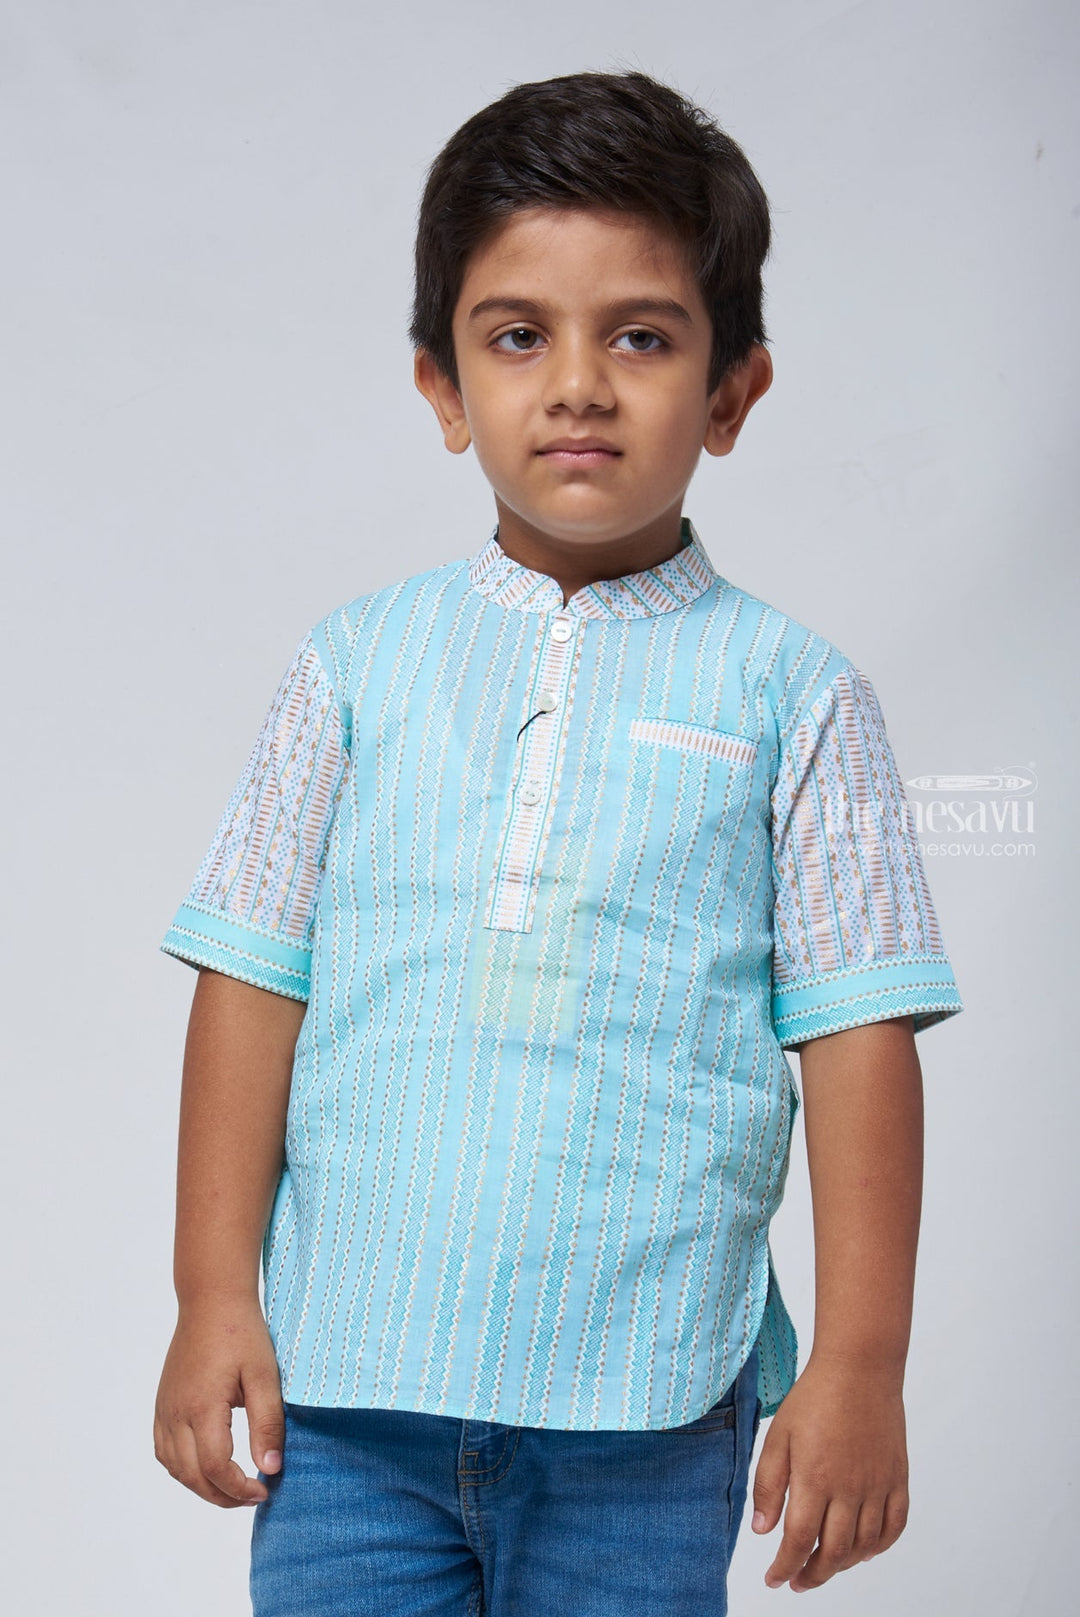 The Nesavu Boys Linen Shirt Azure Artistry: Boys Blue Shirt with Intricate Ikat Patterns, Mandarin Collar Nesavu 12 (3M) / Blue BS077A-12 Ikat Printed Boys Shirt | Premium Linen Shirt Online | The Nesavu